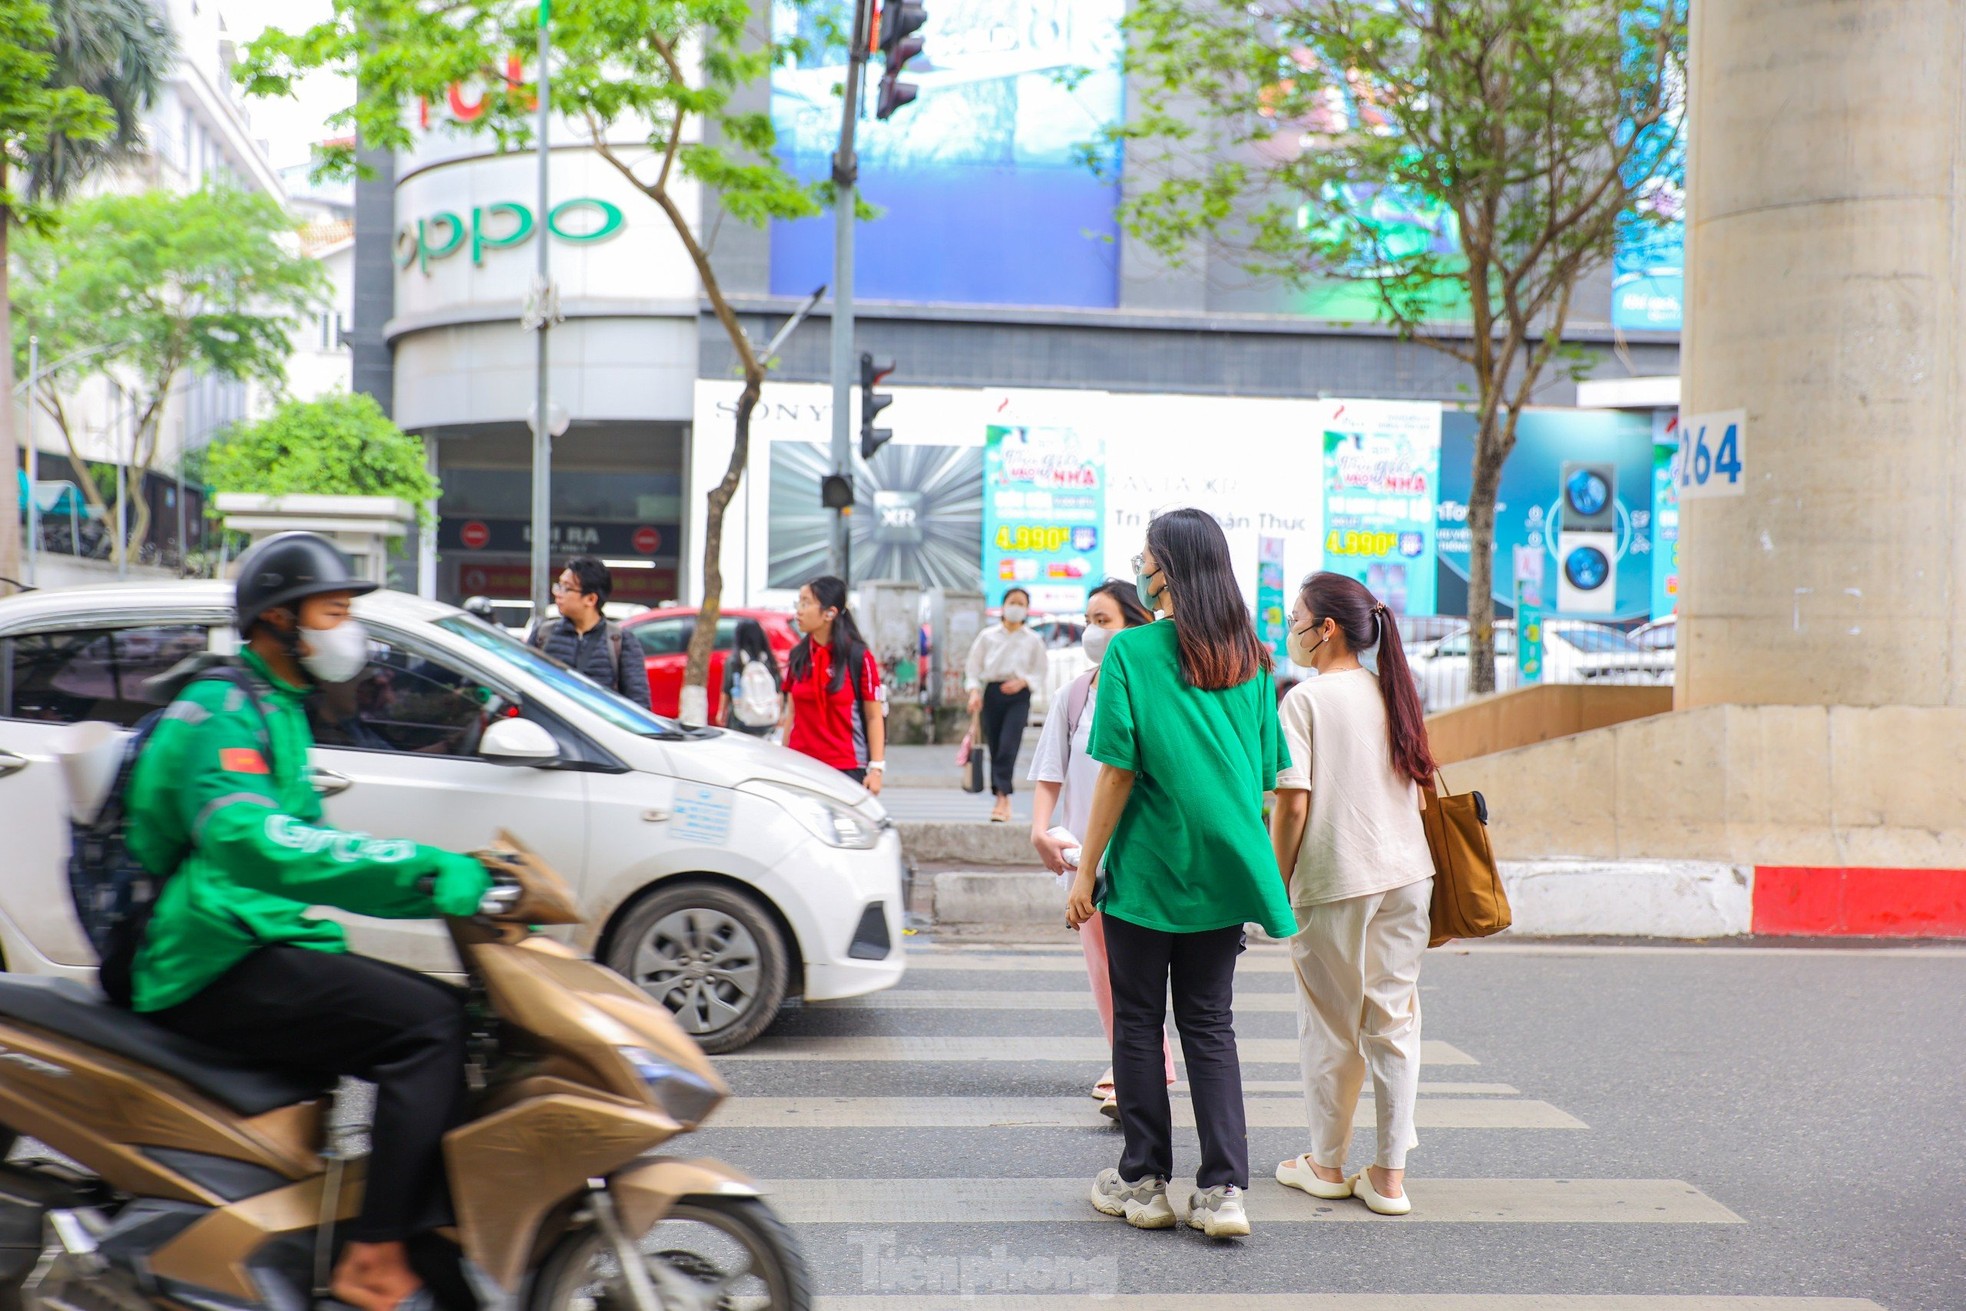 Hà Nội: Đèn 'xin đường' dành cho người đi bộ có cũng như không ảnh 4